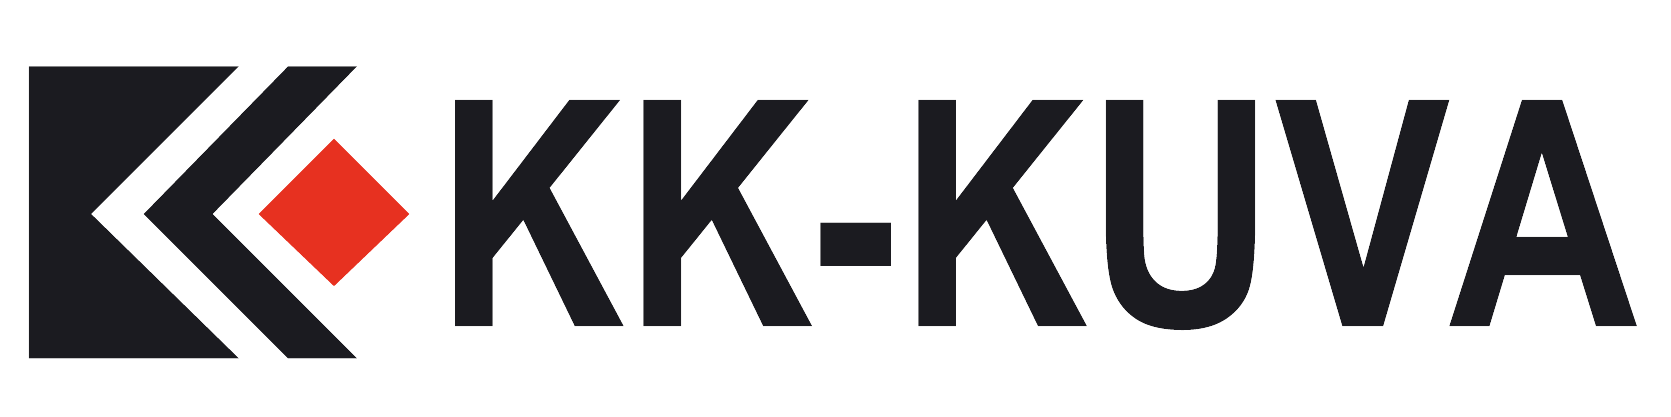 KK-KUVA | Henkilökuvausten erikoisliike